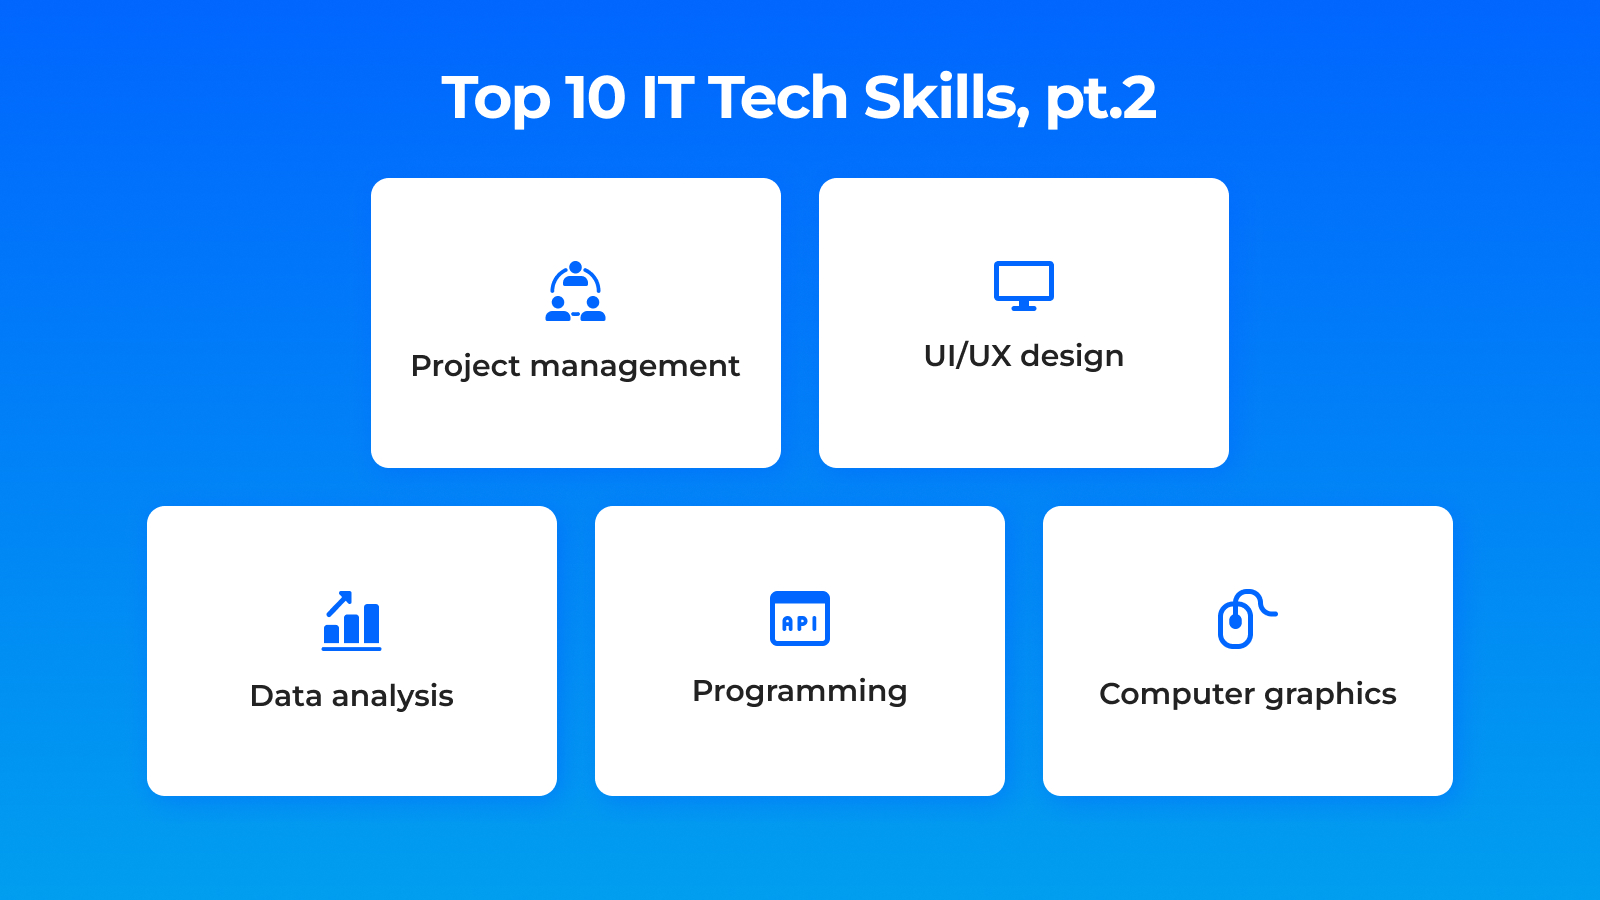 Top 10 IT Tech Skills, pt.2